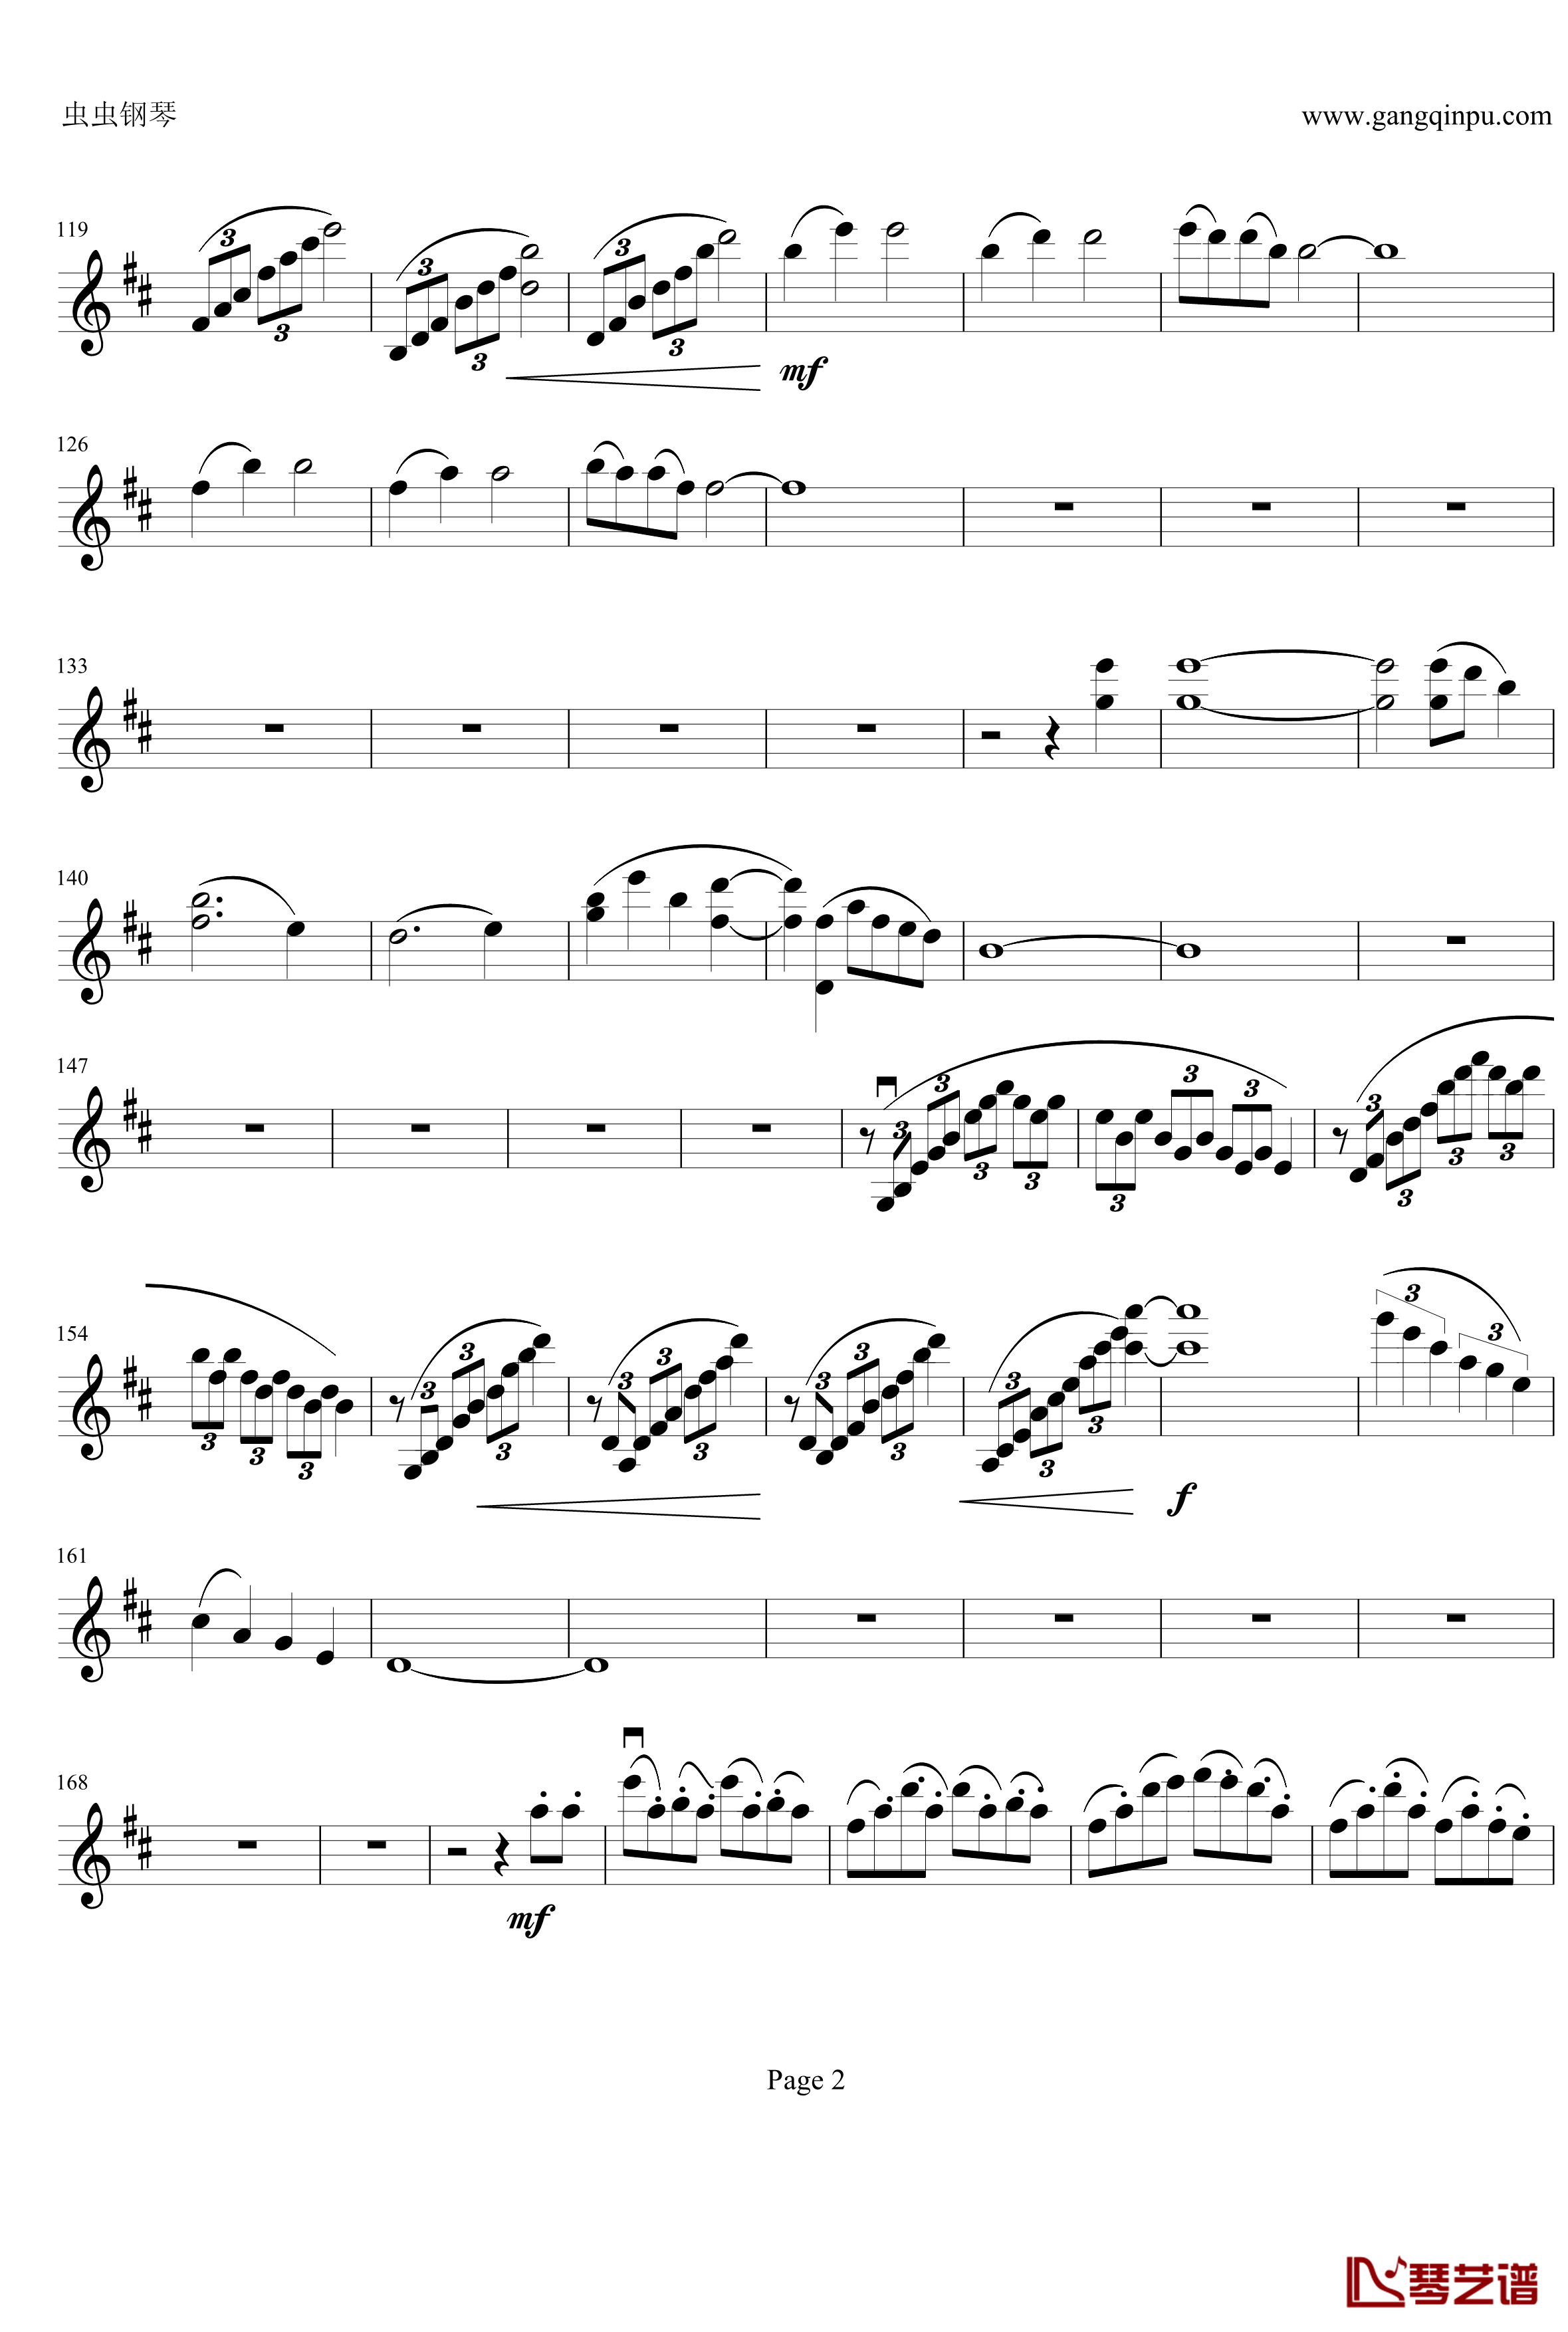 云南风情钢琴谱-第一乐章-b小调小提琴协奏曲-项道荣2